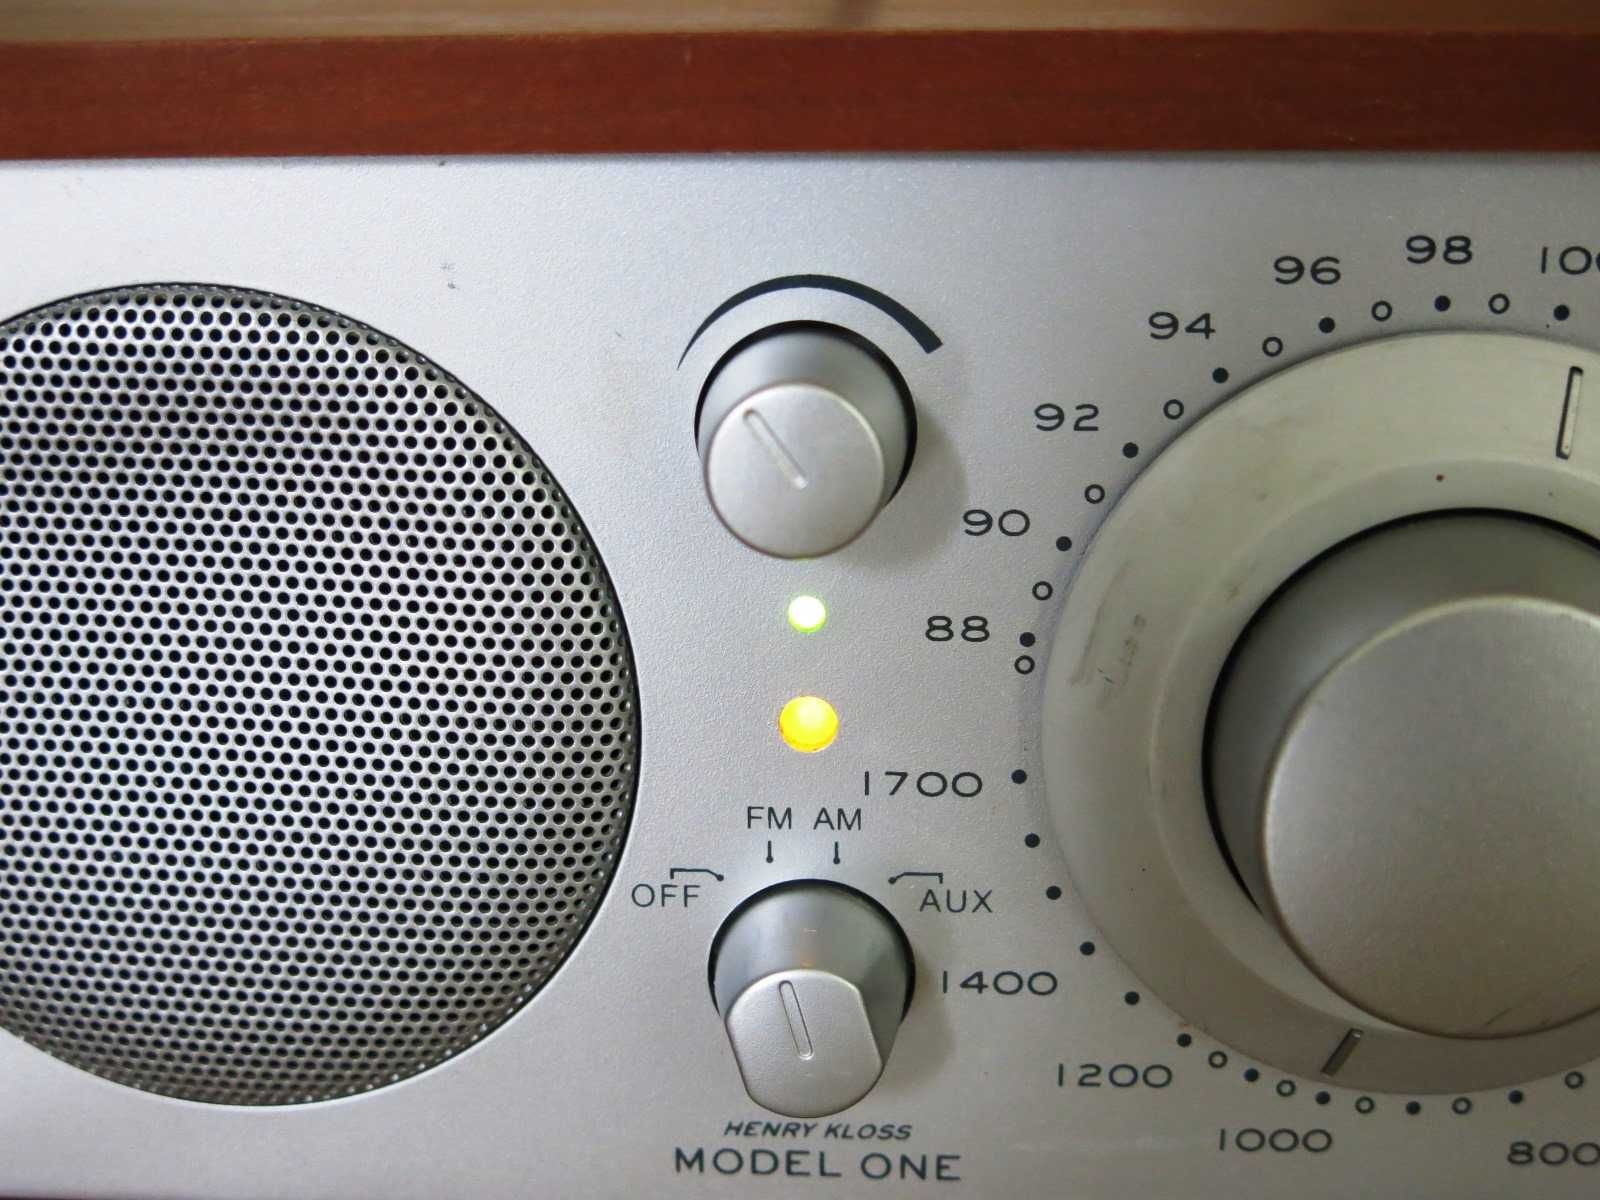 Радио Tivoli Henry Kloss Model One